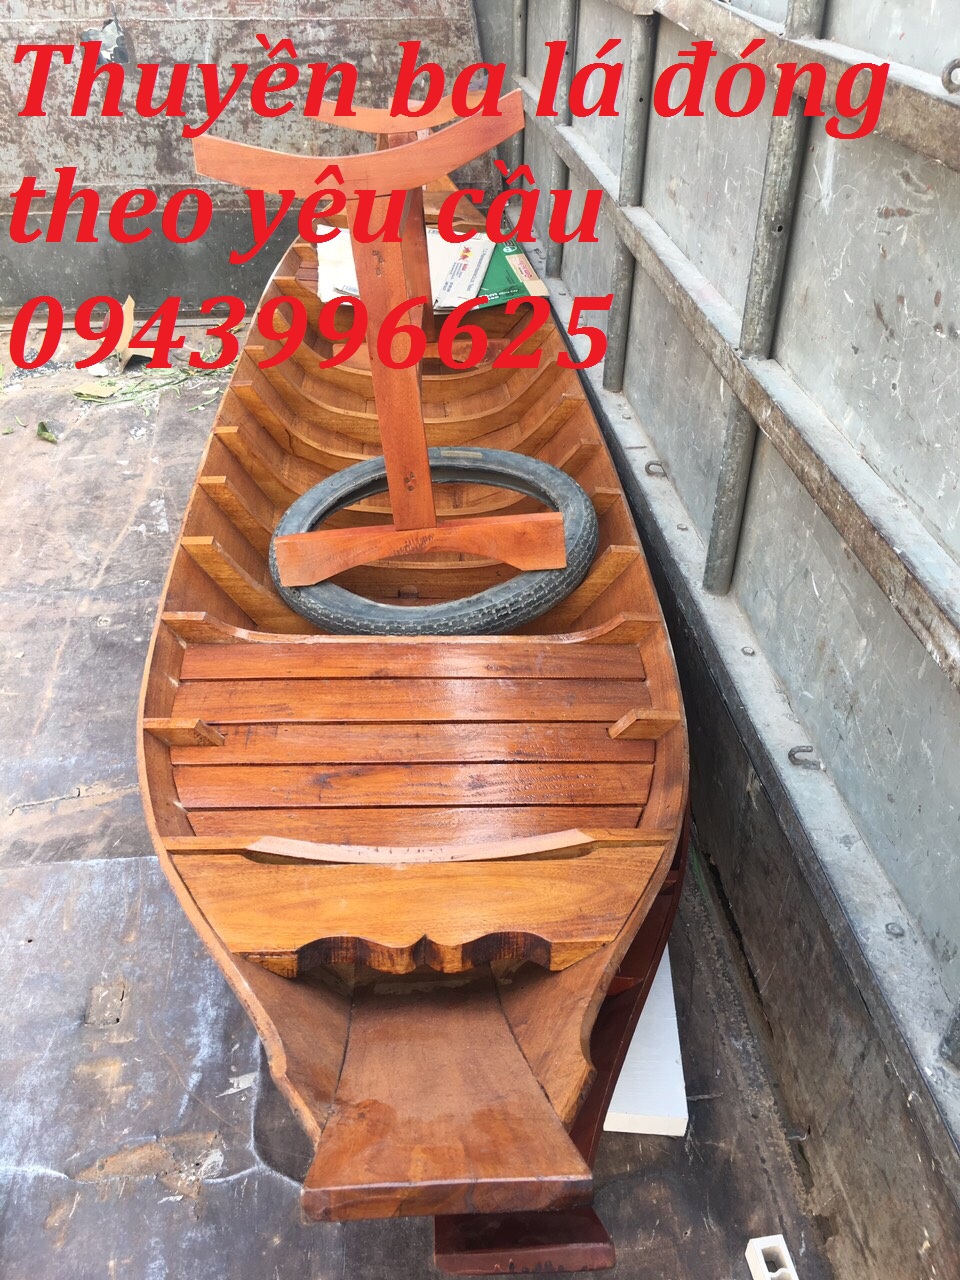 Thuyền Gỗ trang trí ,thuyền gỗ trưng bày hải sản dài 2m2 3m5